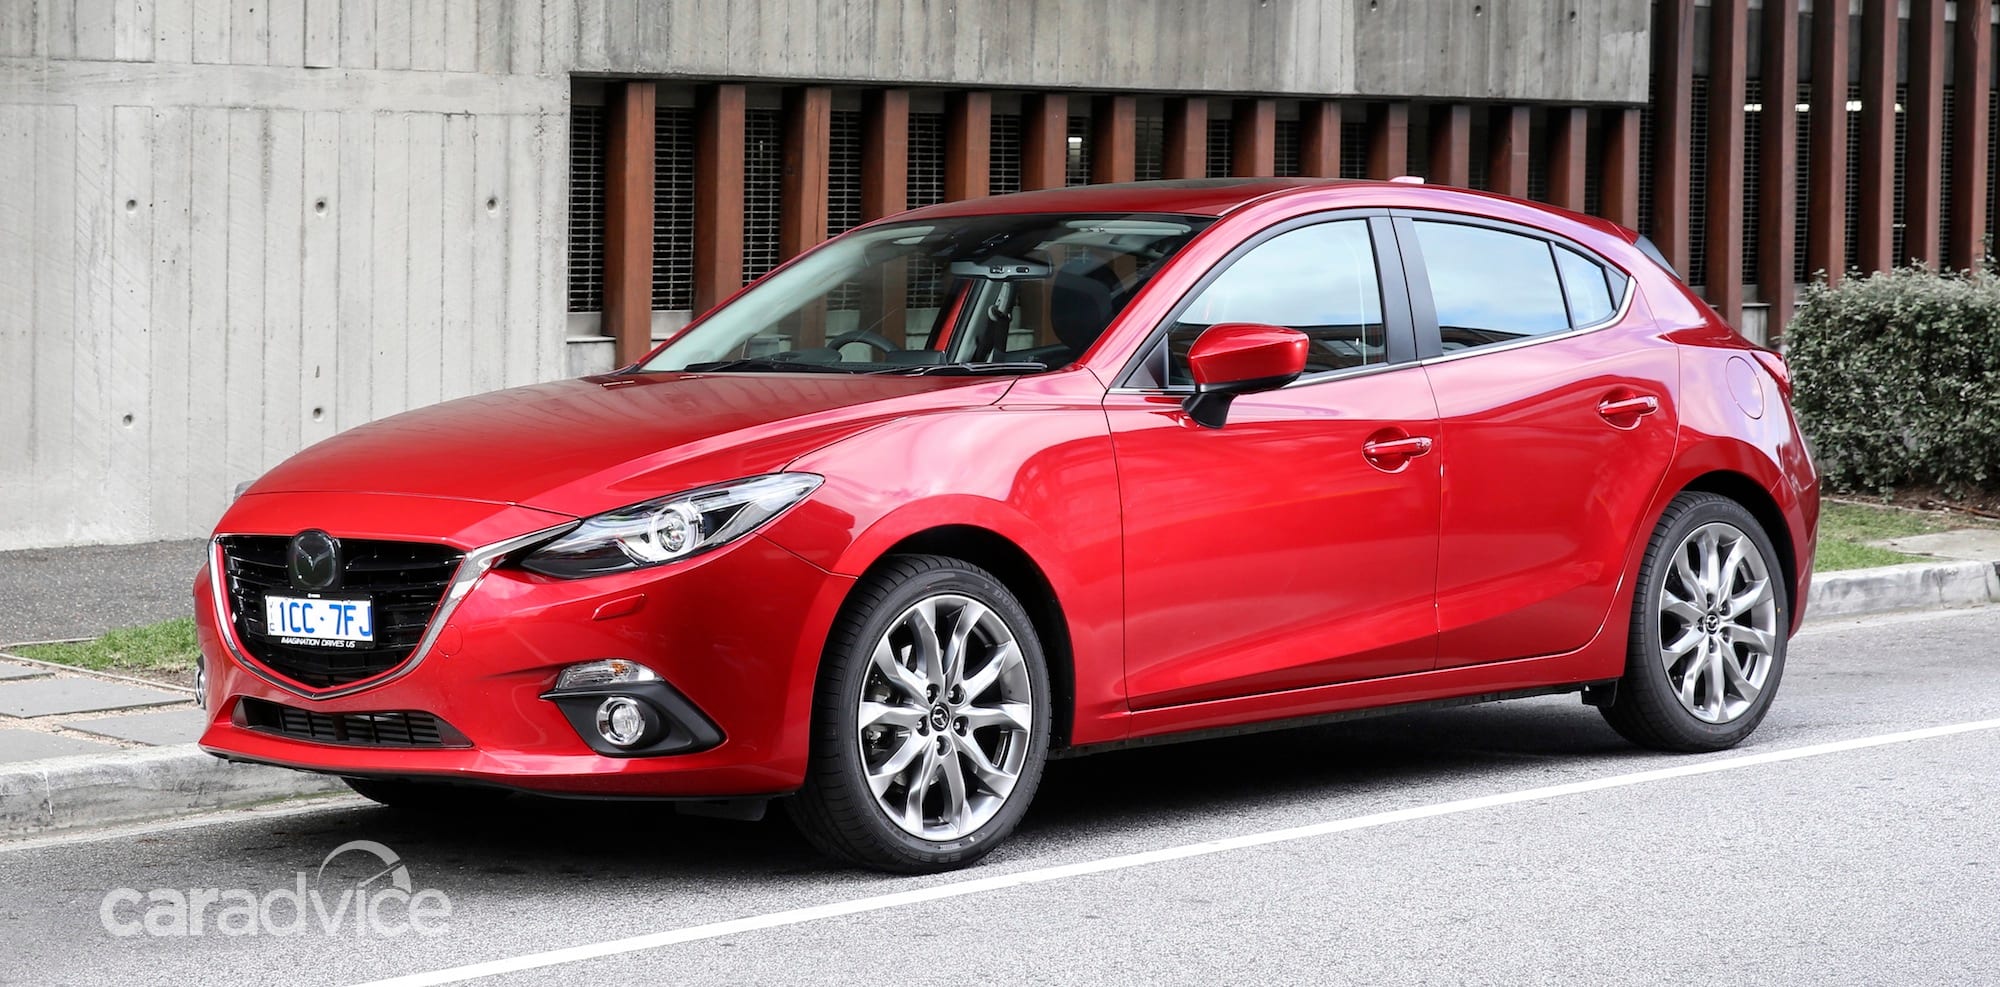 Мазда страна производитель автомобиля: Где выпускают автомобили Mazda? | AvtoCar.su